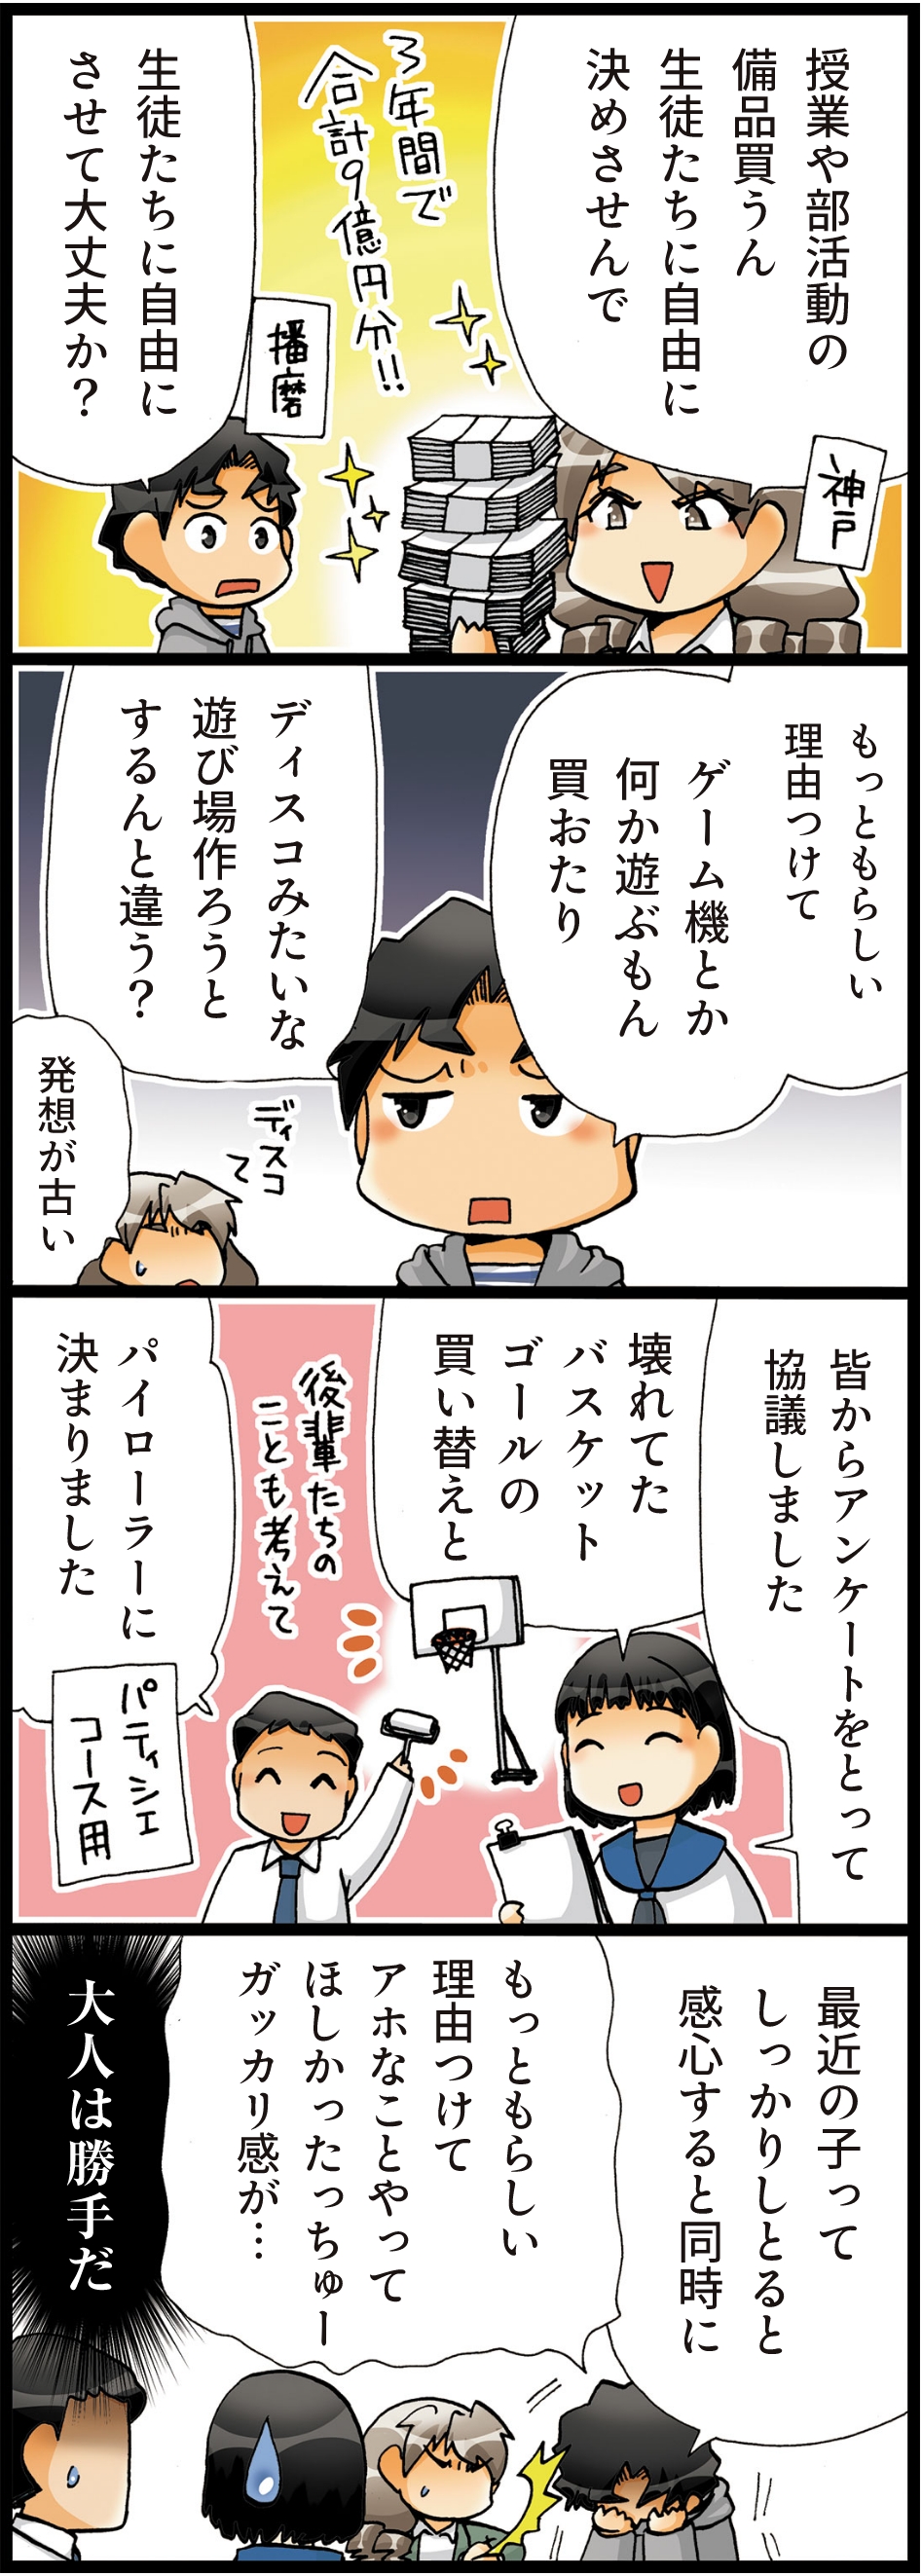 文武両道のまちひょうご 4コマ漫画